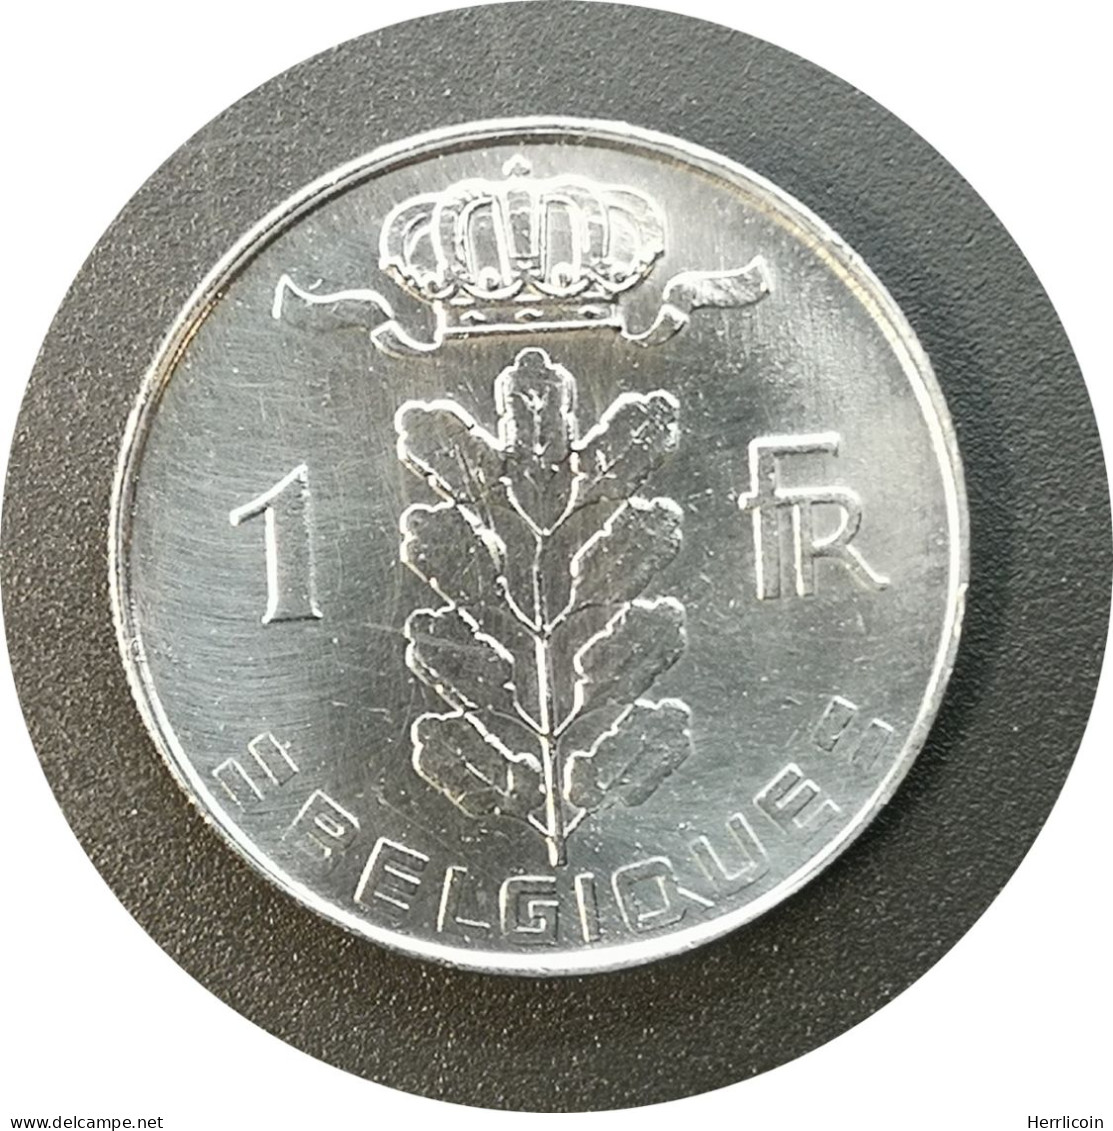 Monnaie Belgique - 1973 - 1 Franc - Type Cérès En Français - 1 Franc